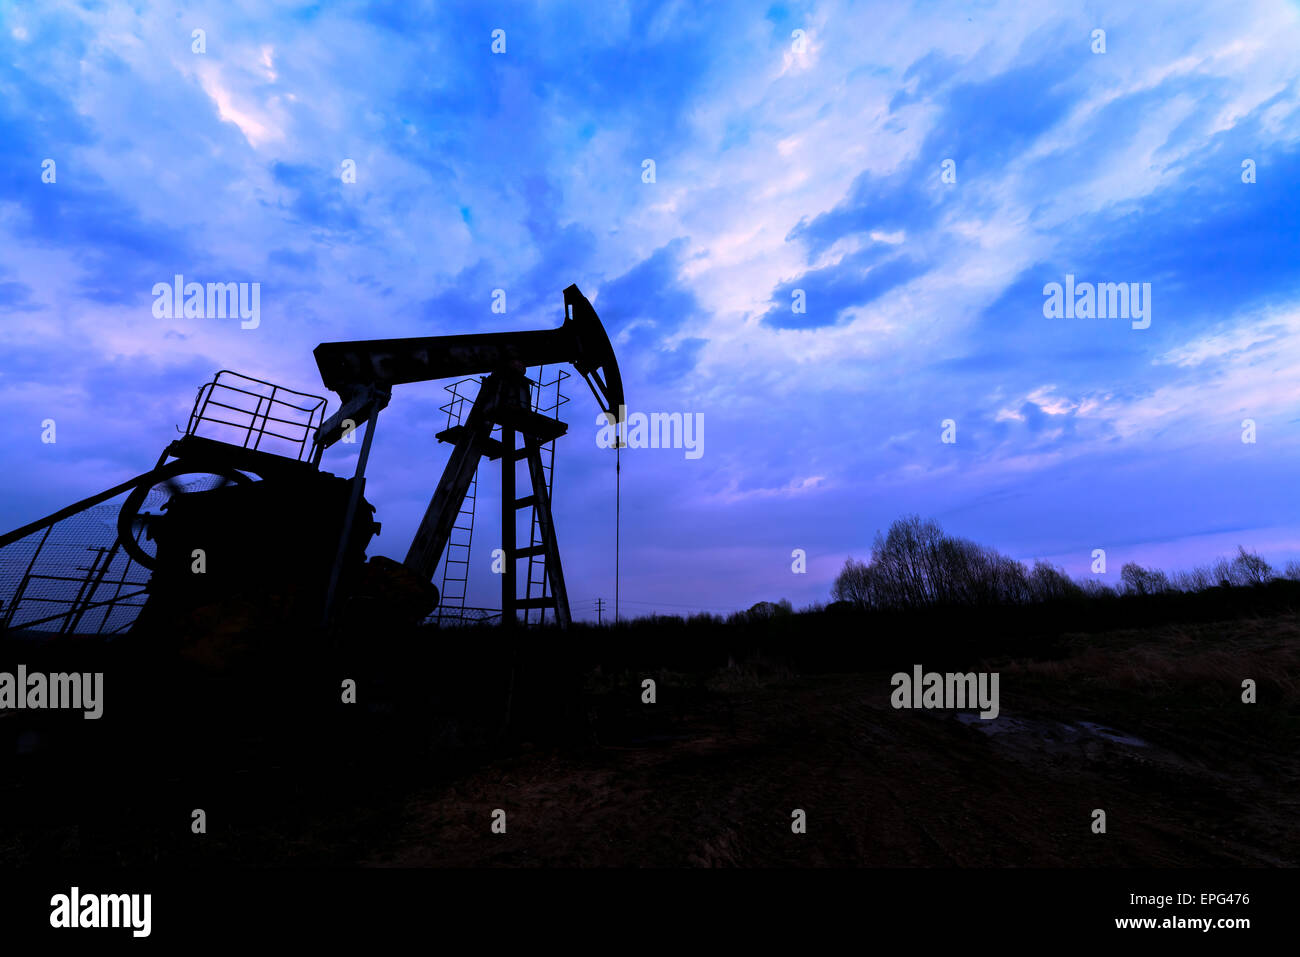 Öl Pumpe Silhouette gegen blauen Himmel Stockfoto